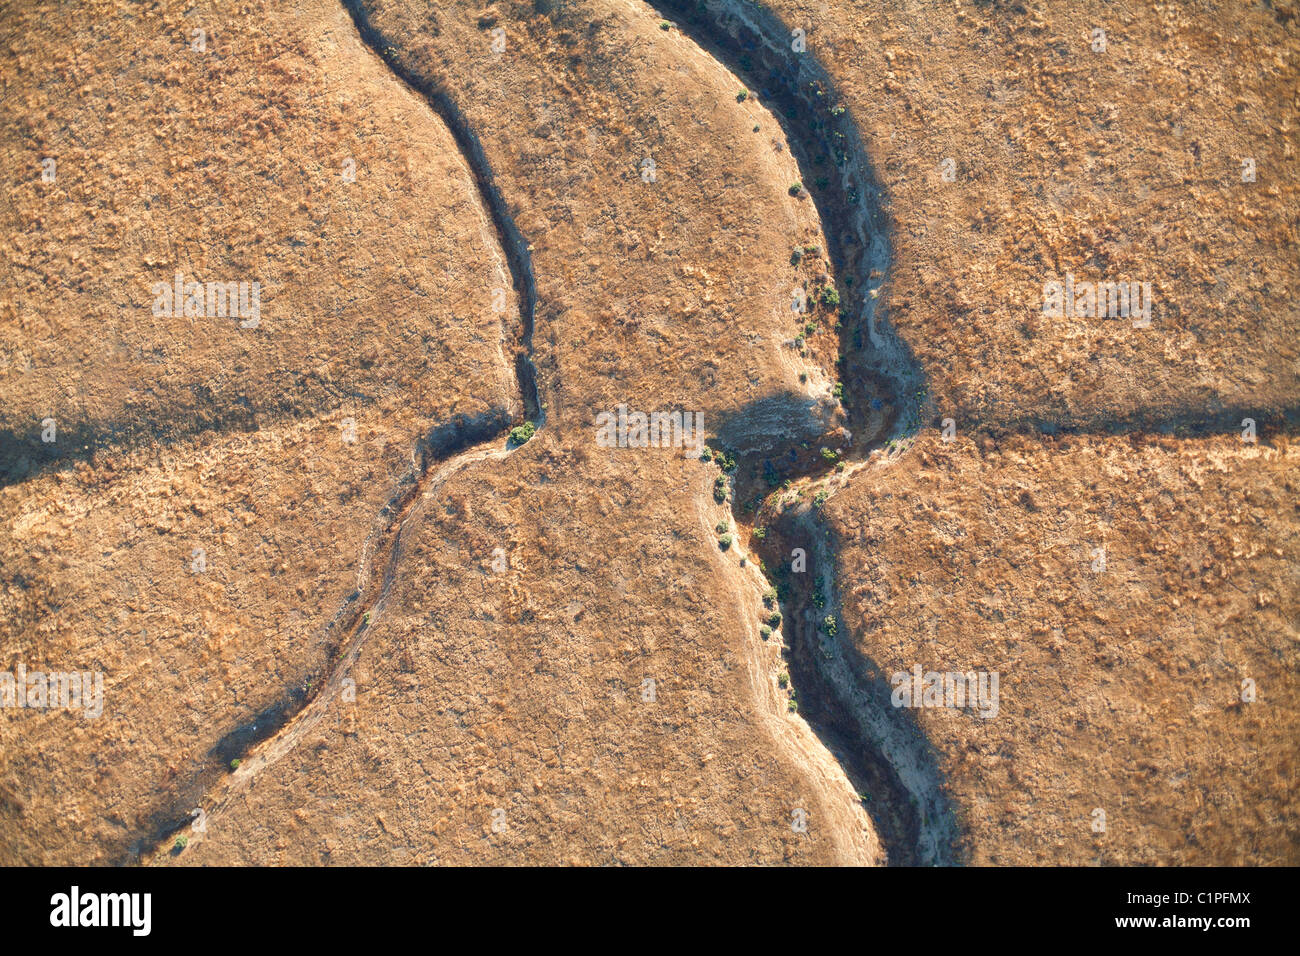 VISTA AEREA VERTICALE. Guasto di San Andreas. La piastra Pacific (metà inferiore) e la piastra Nord America (metà superiore). Carrizo Plain, California, USA. Foto Stock